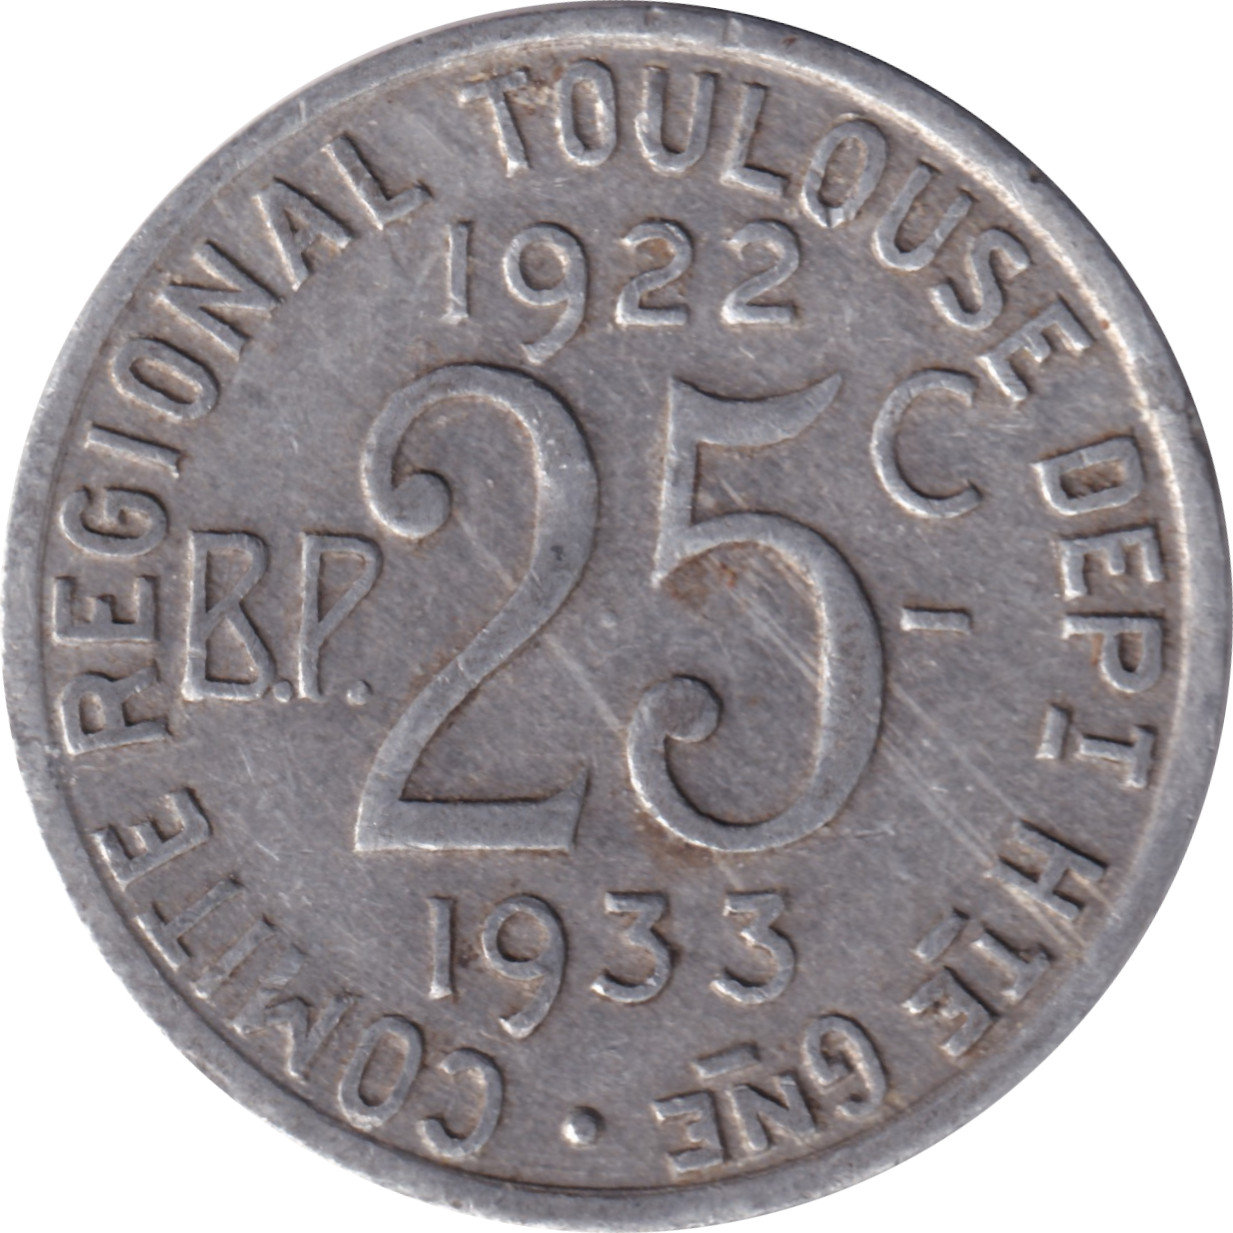 25 centimes - Toulouse - Département de la Haute Garonne